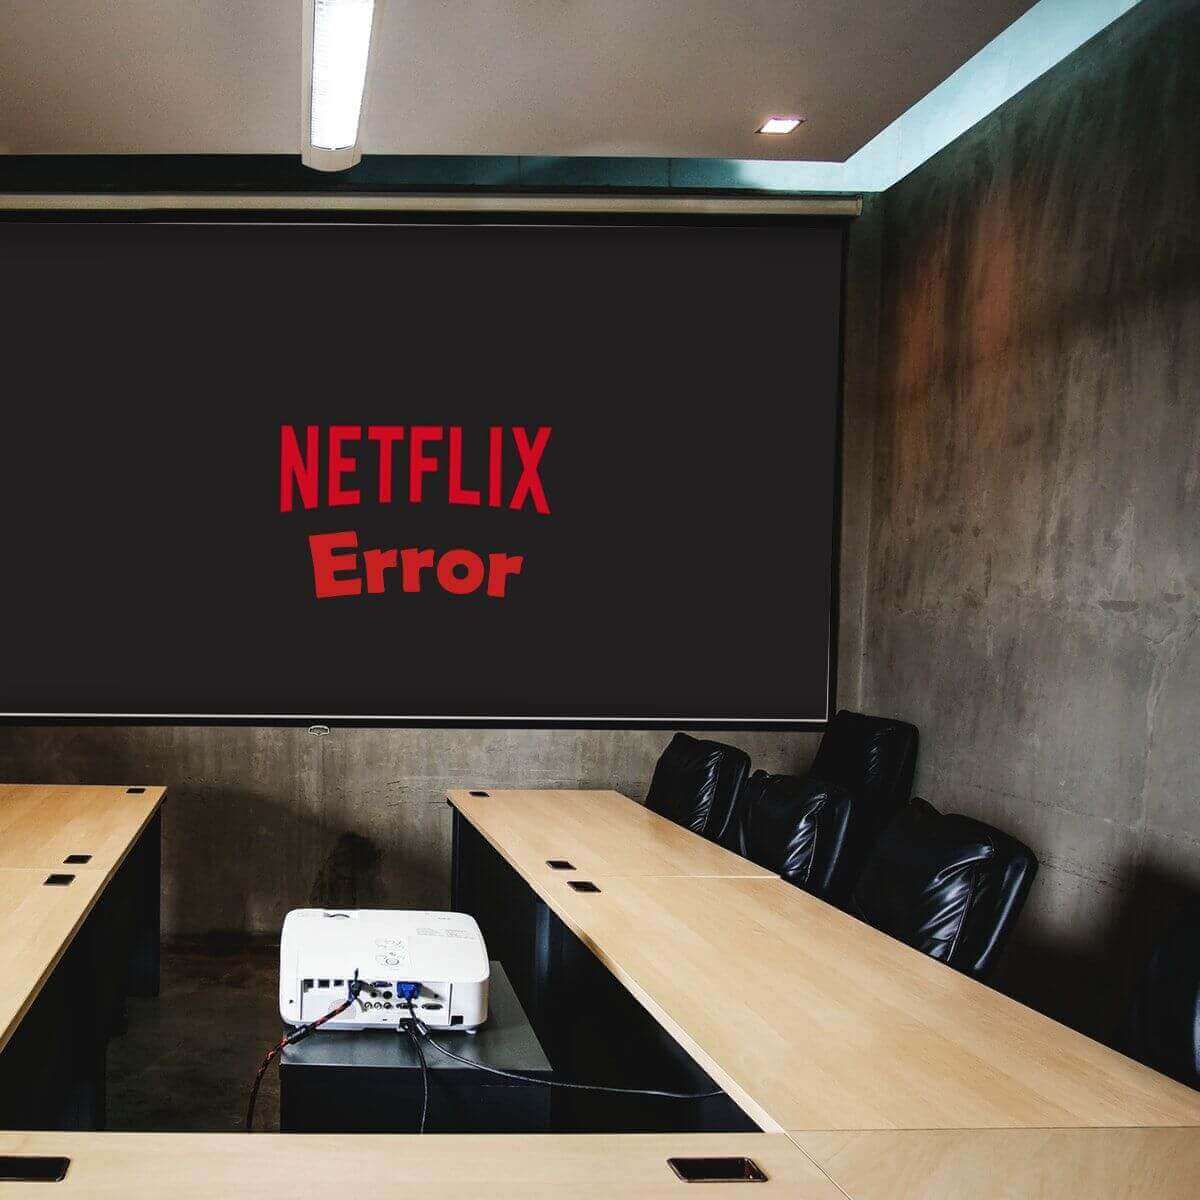 Netflix-error-m7111-5059